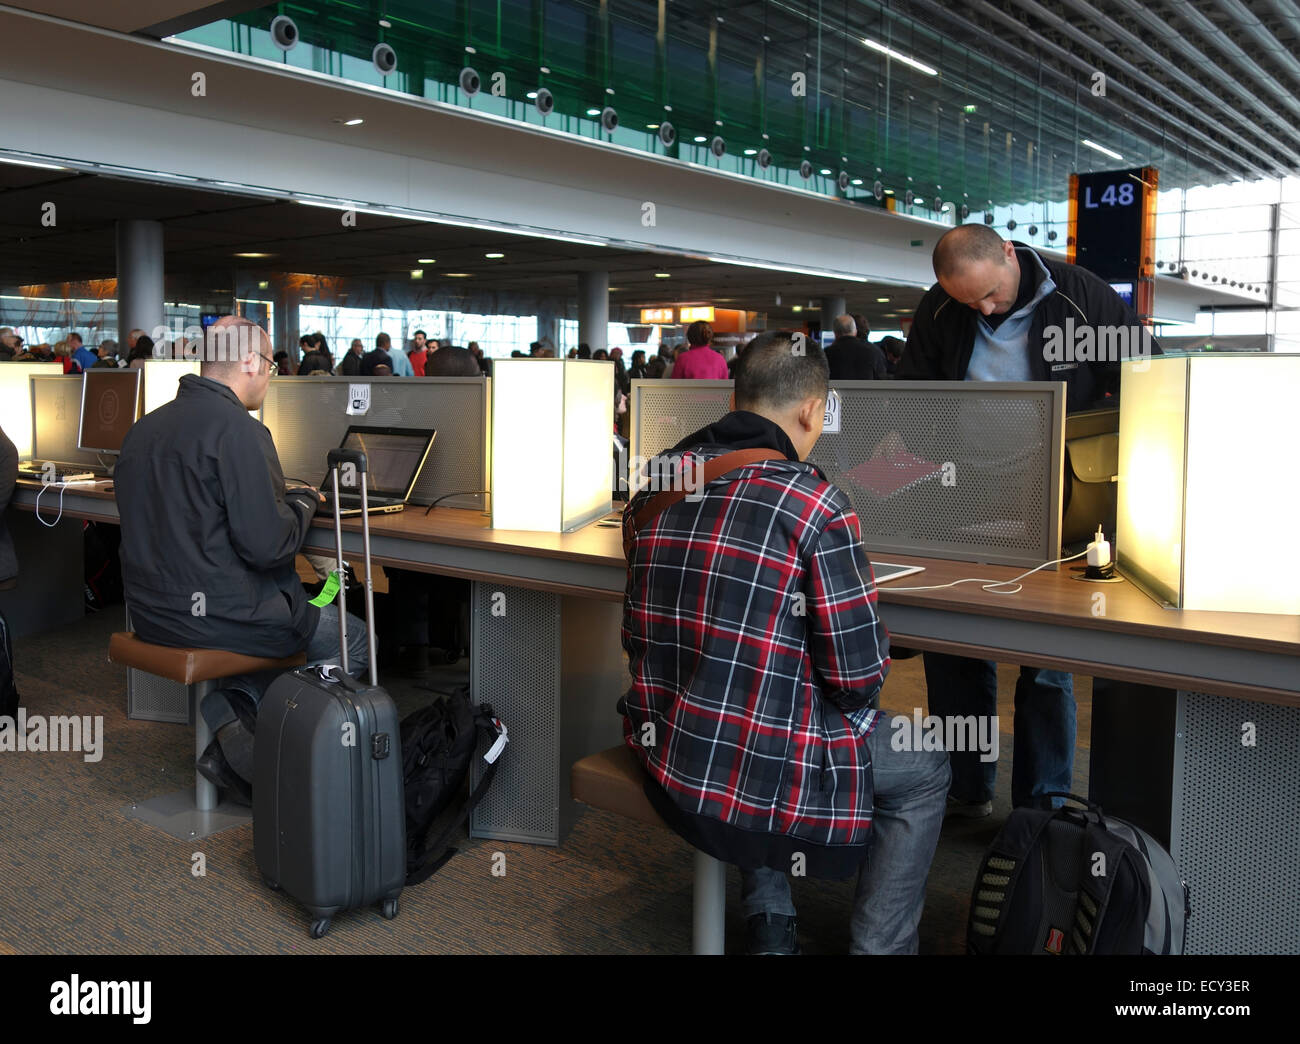 Personen, die am Flughafen mit Laptops reisen, nutzen kostenlosen WIFI-Zugang. Paris. Charles de Gaulle. Frankreich. Stockfoto